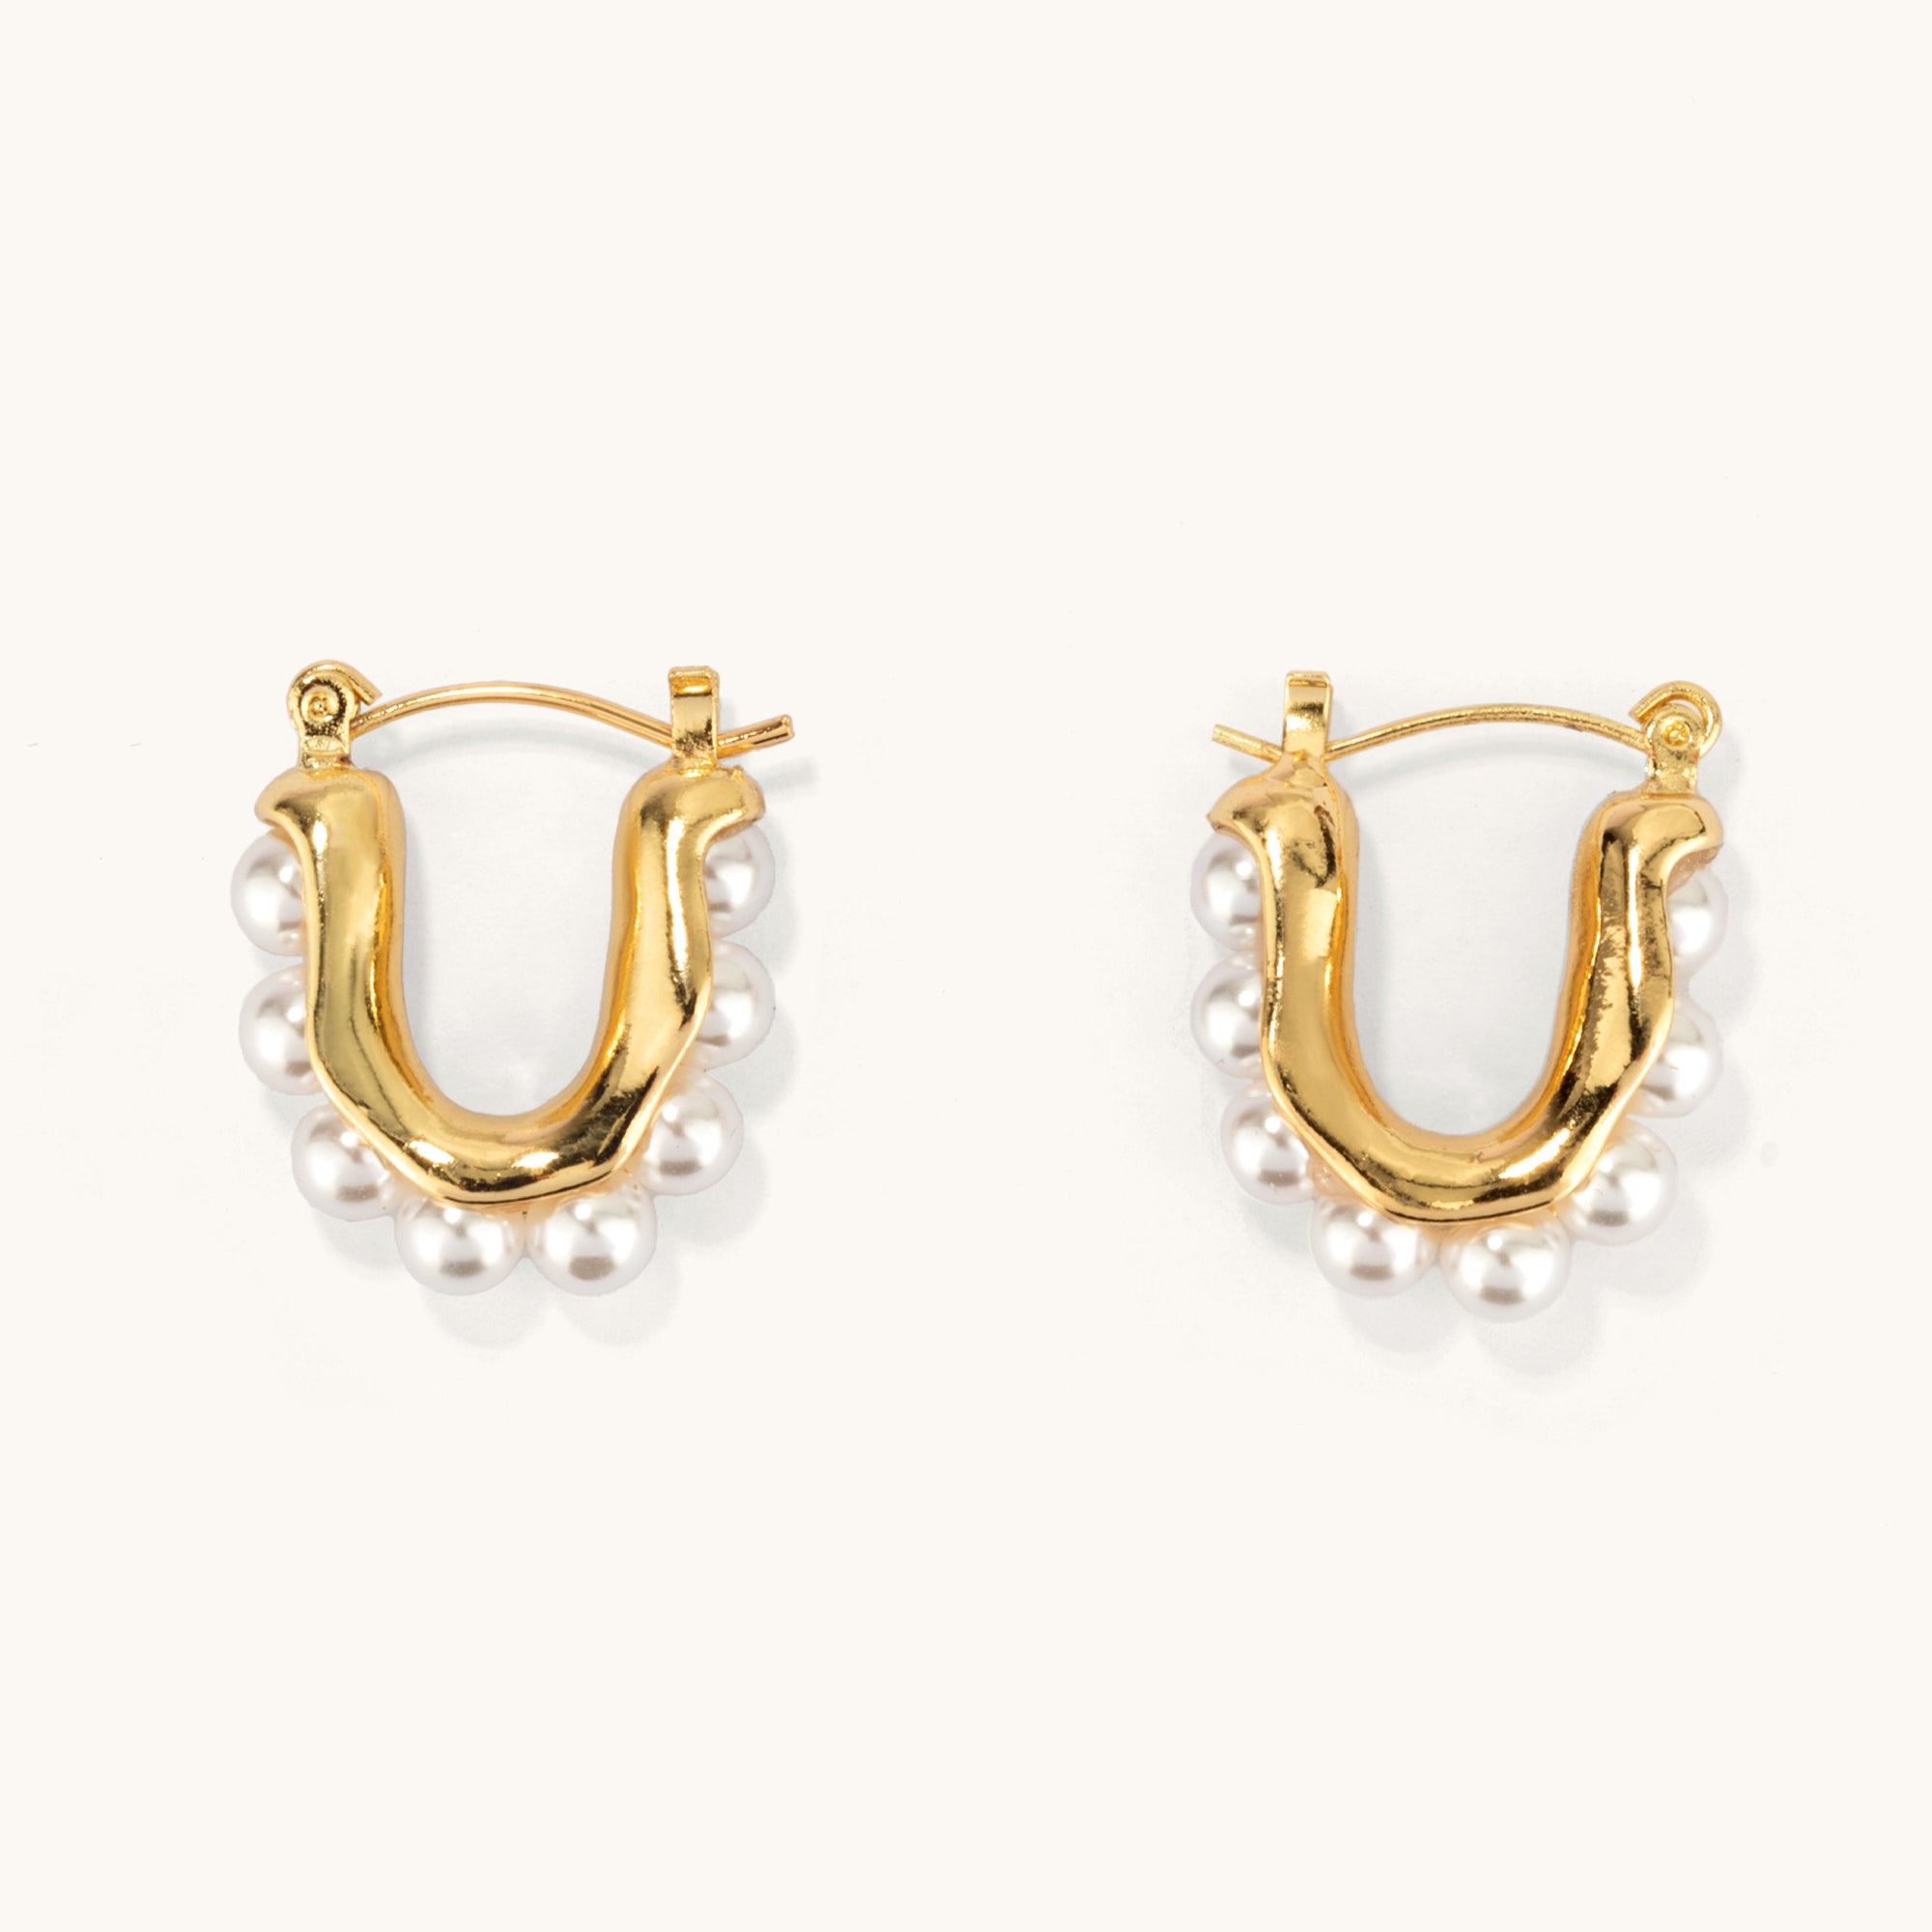 Golden Pearl River Earrings